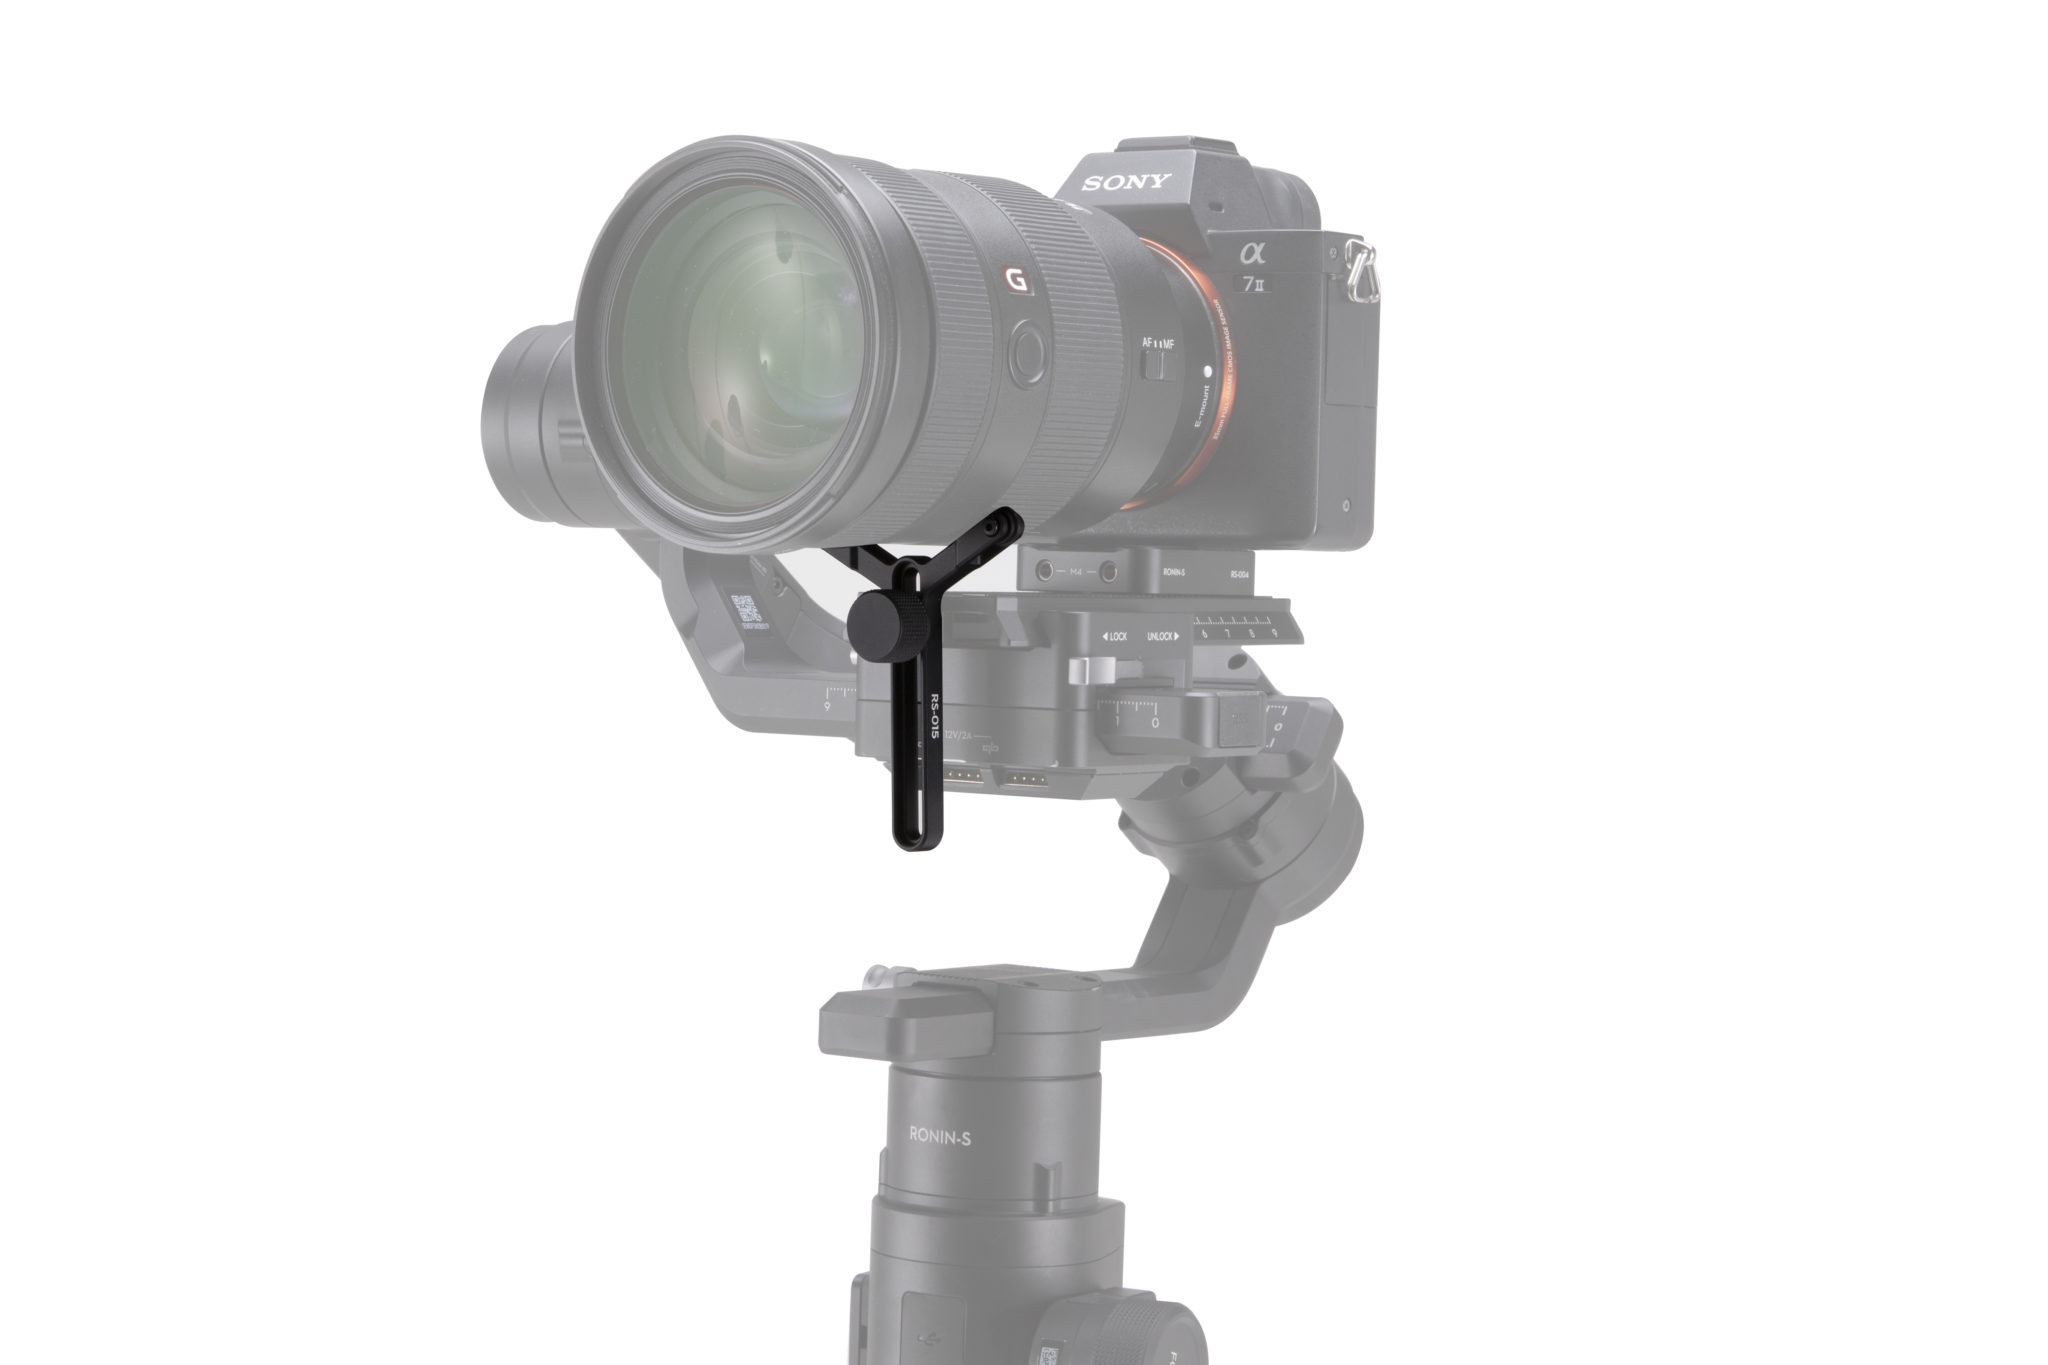 DJI Ronin-S extended lens support